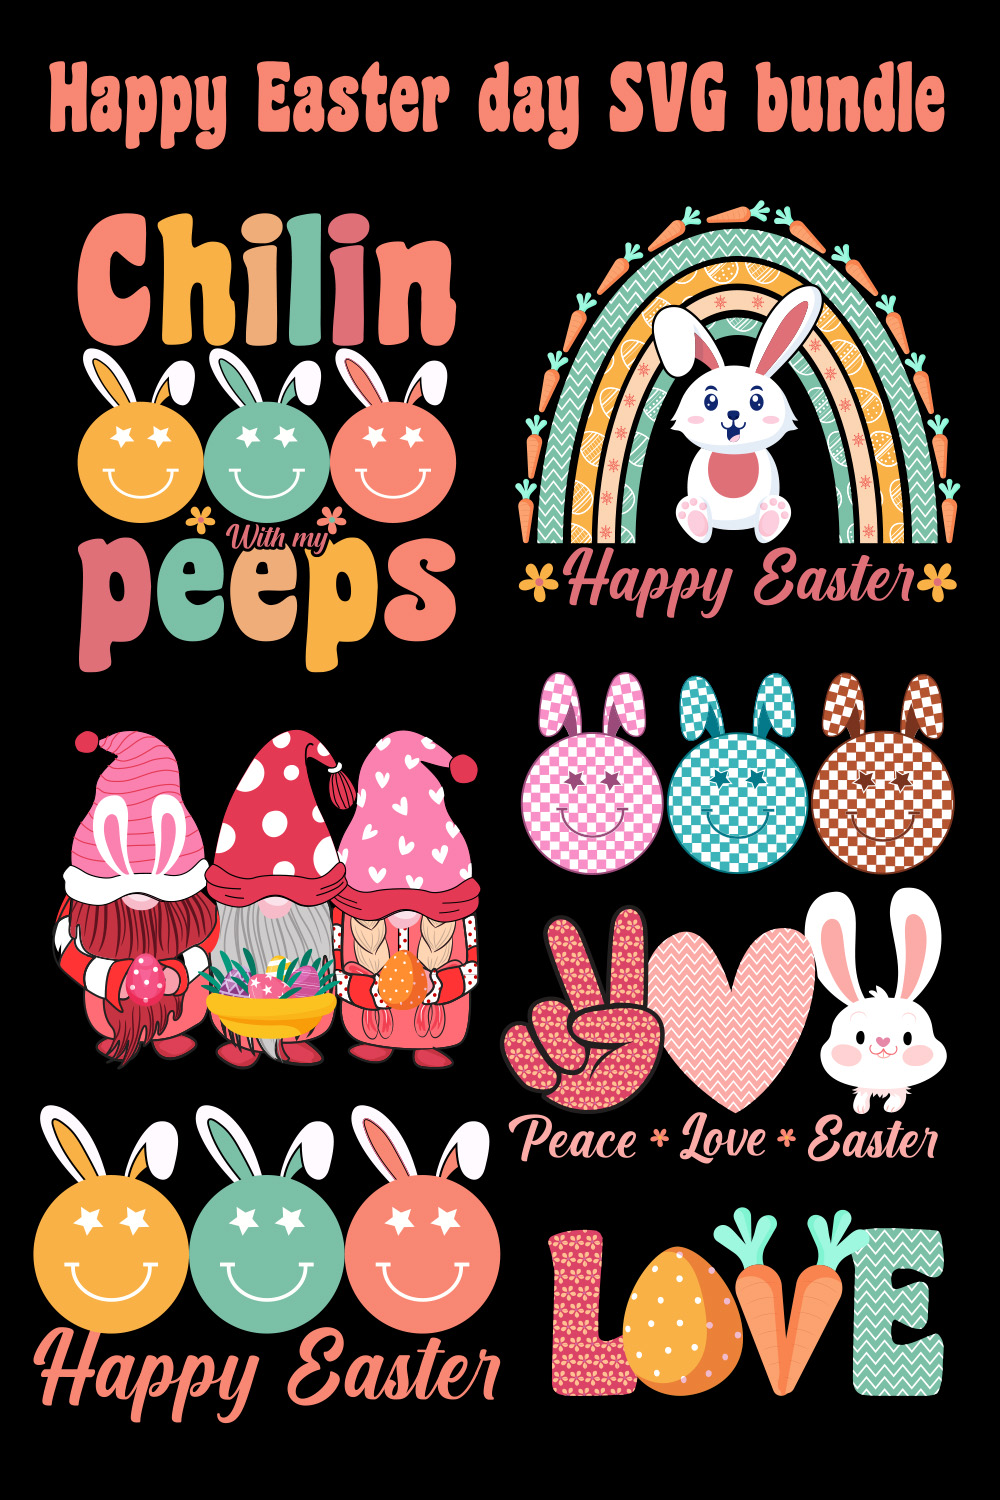 Happy Easter SVG Bundle design pinterest preview image.